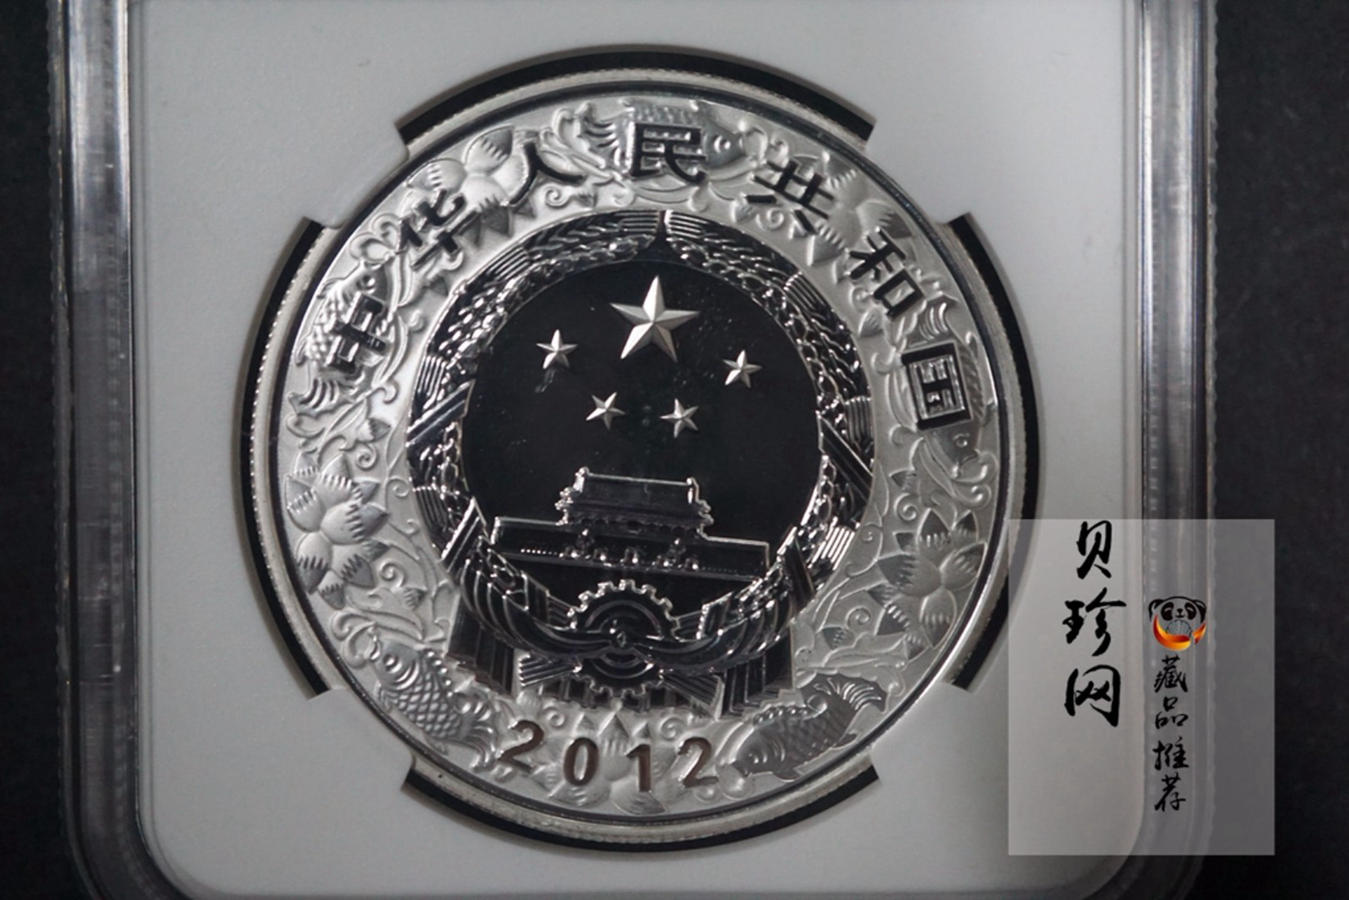 【111502】2012年壬辰龙年生肖1盎司精制银币